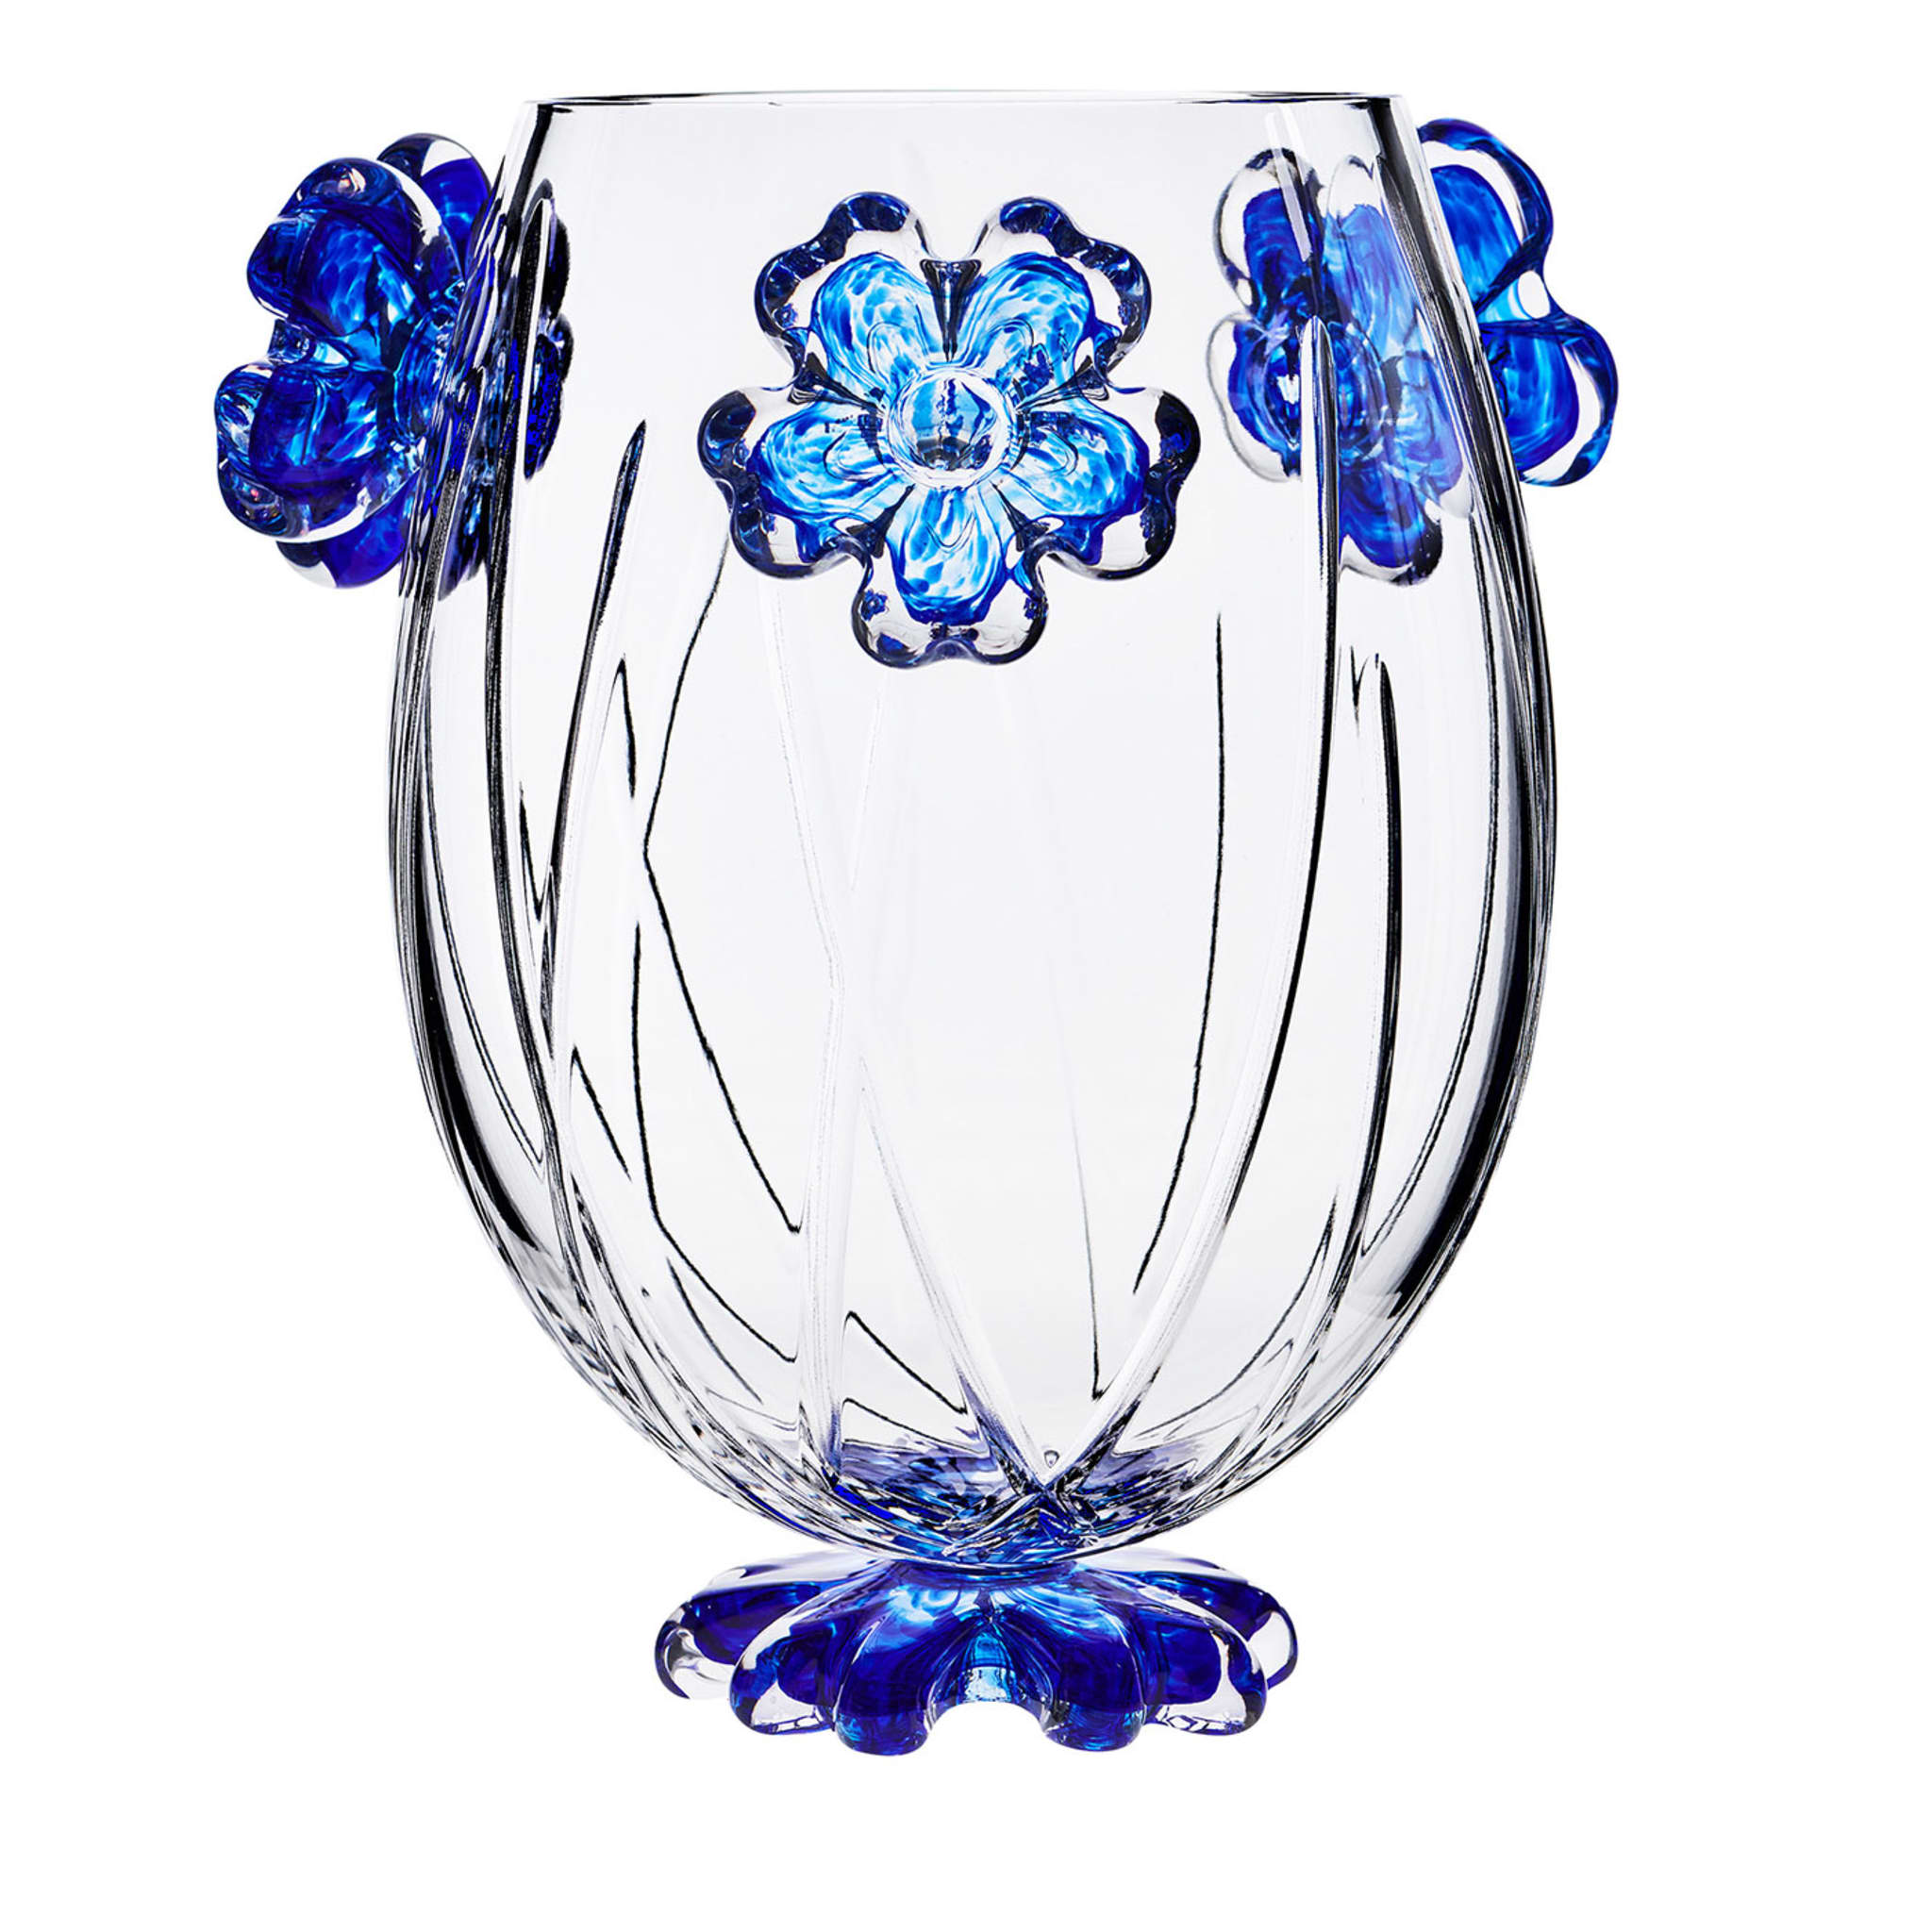 Cistus Drop with Blue Flowers Vase - Main view